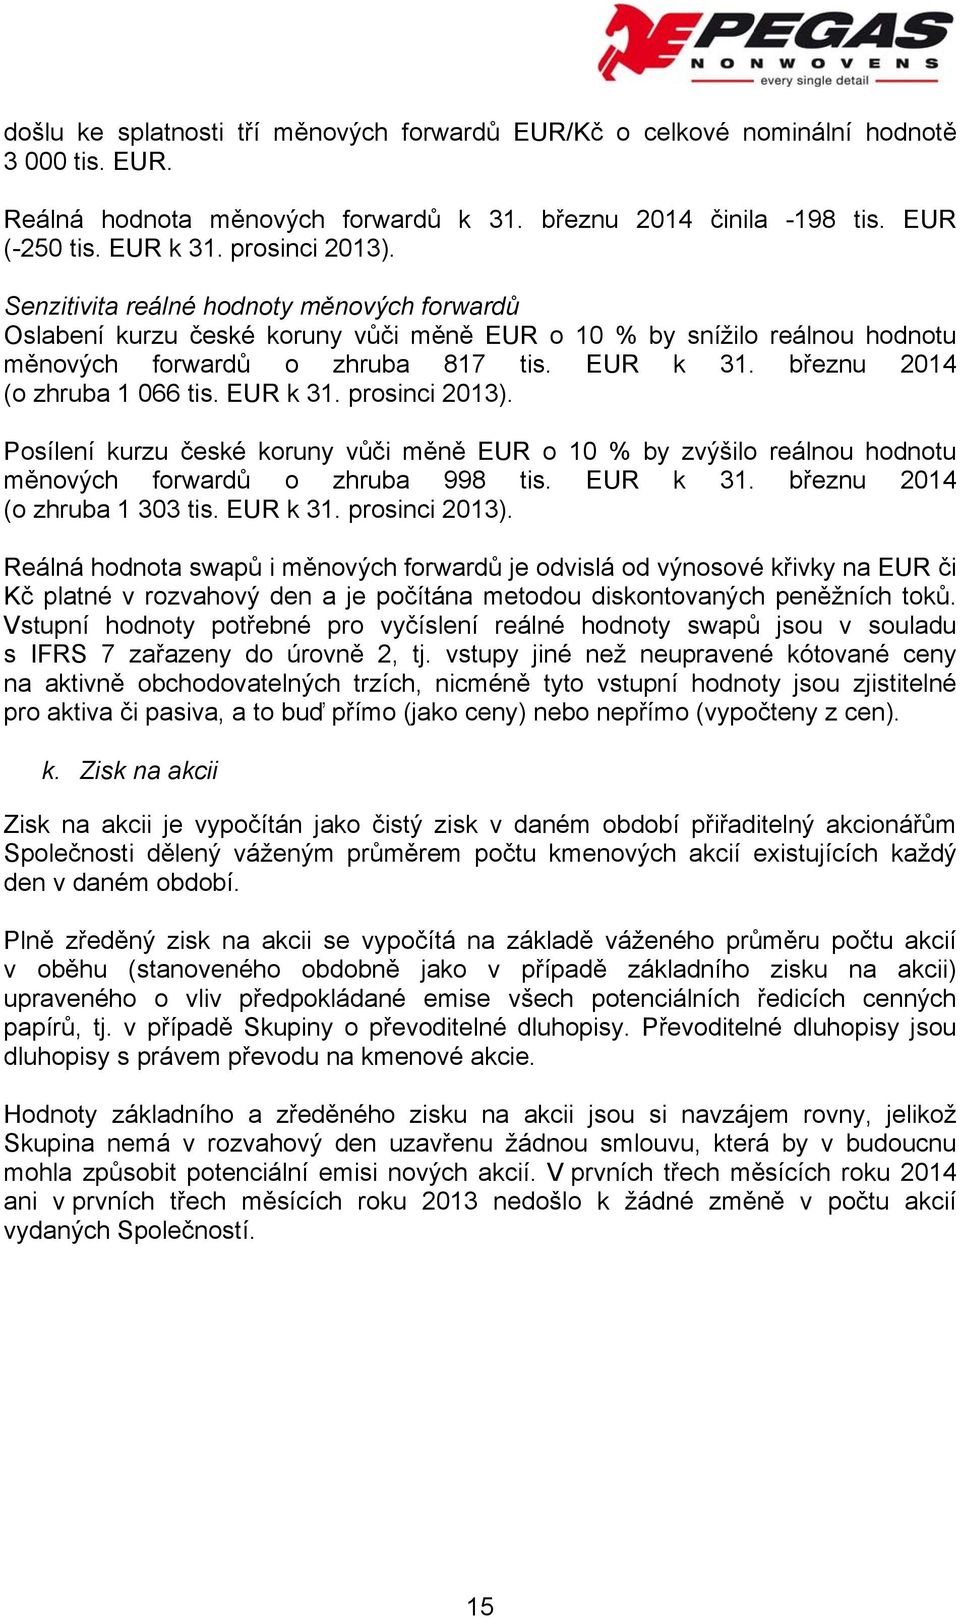 březnu 2014 (o zhruba 1 066 tis. EUR k 31. prosinci 2013). Posílení kurzu české koruny vůči měně EUR o 10 % by zvýšilo reálnou hodnotu měnových forwardů o zhruba 998 tis. EUR k 31. březnu 2014 (o zhruba 1 303 tis.